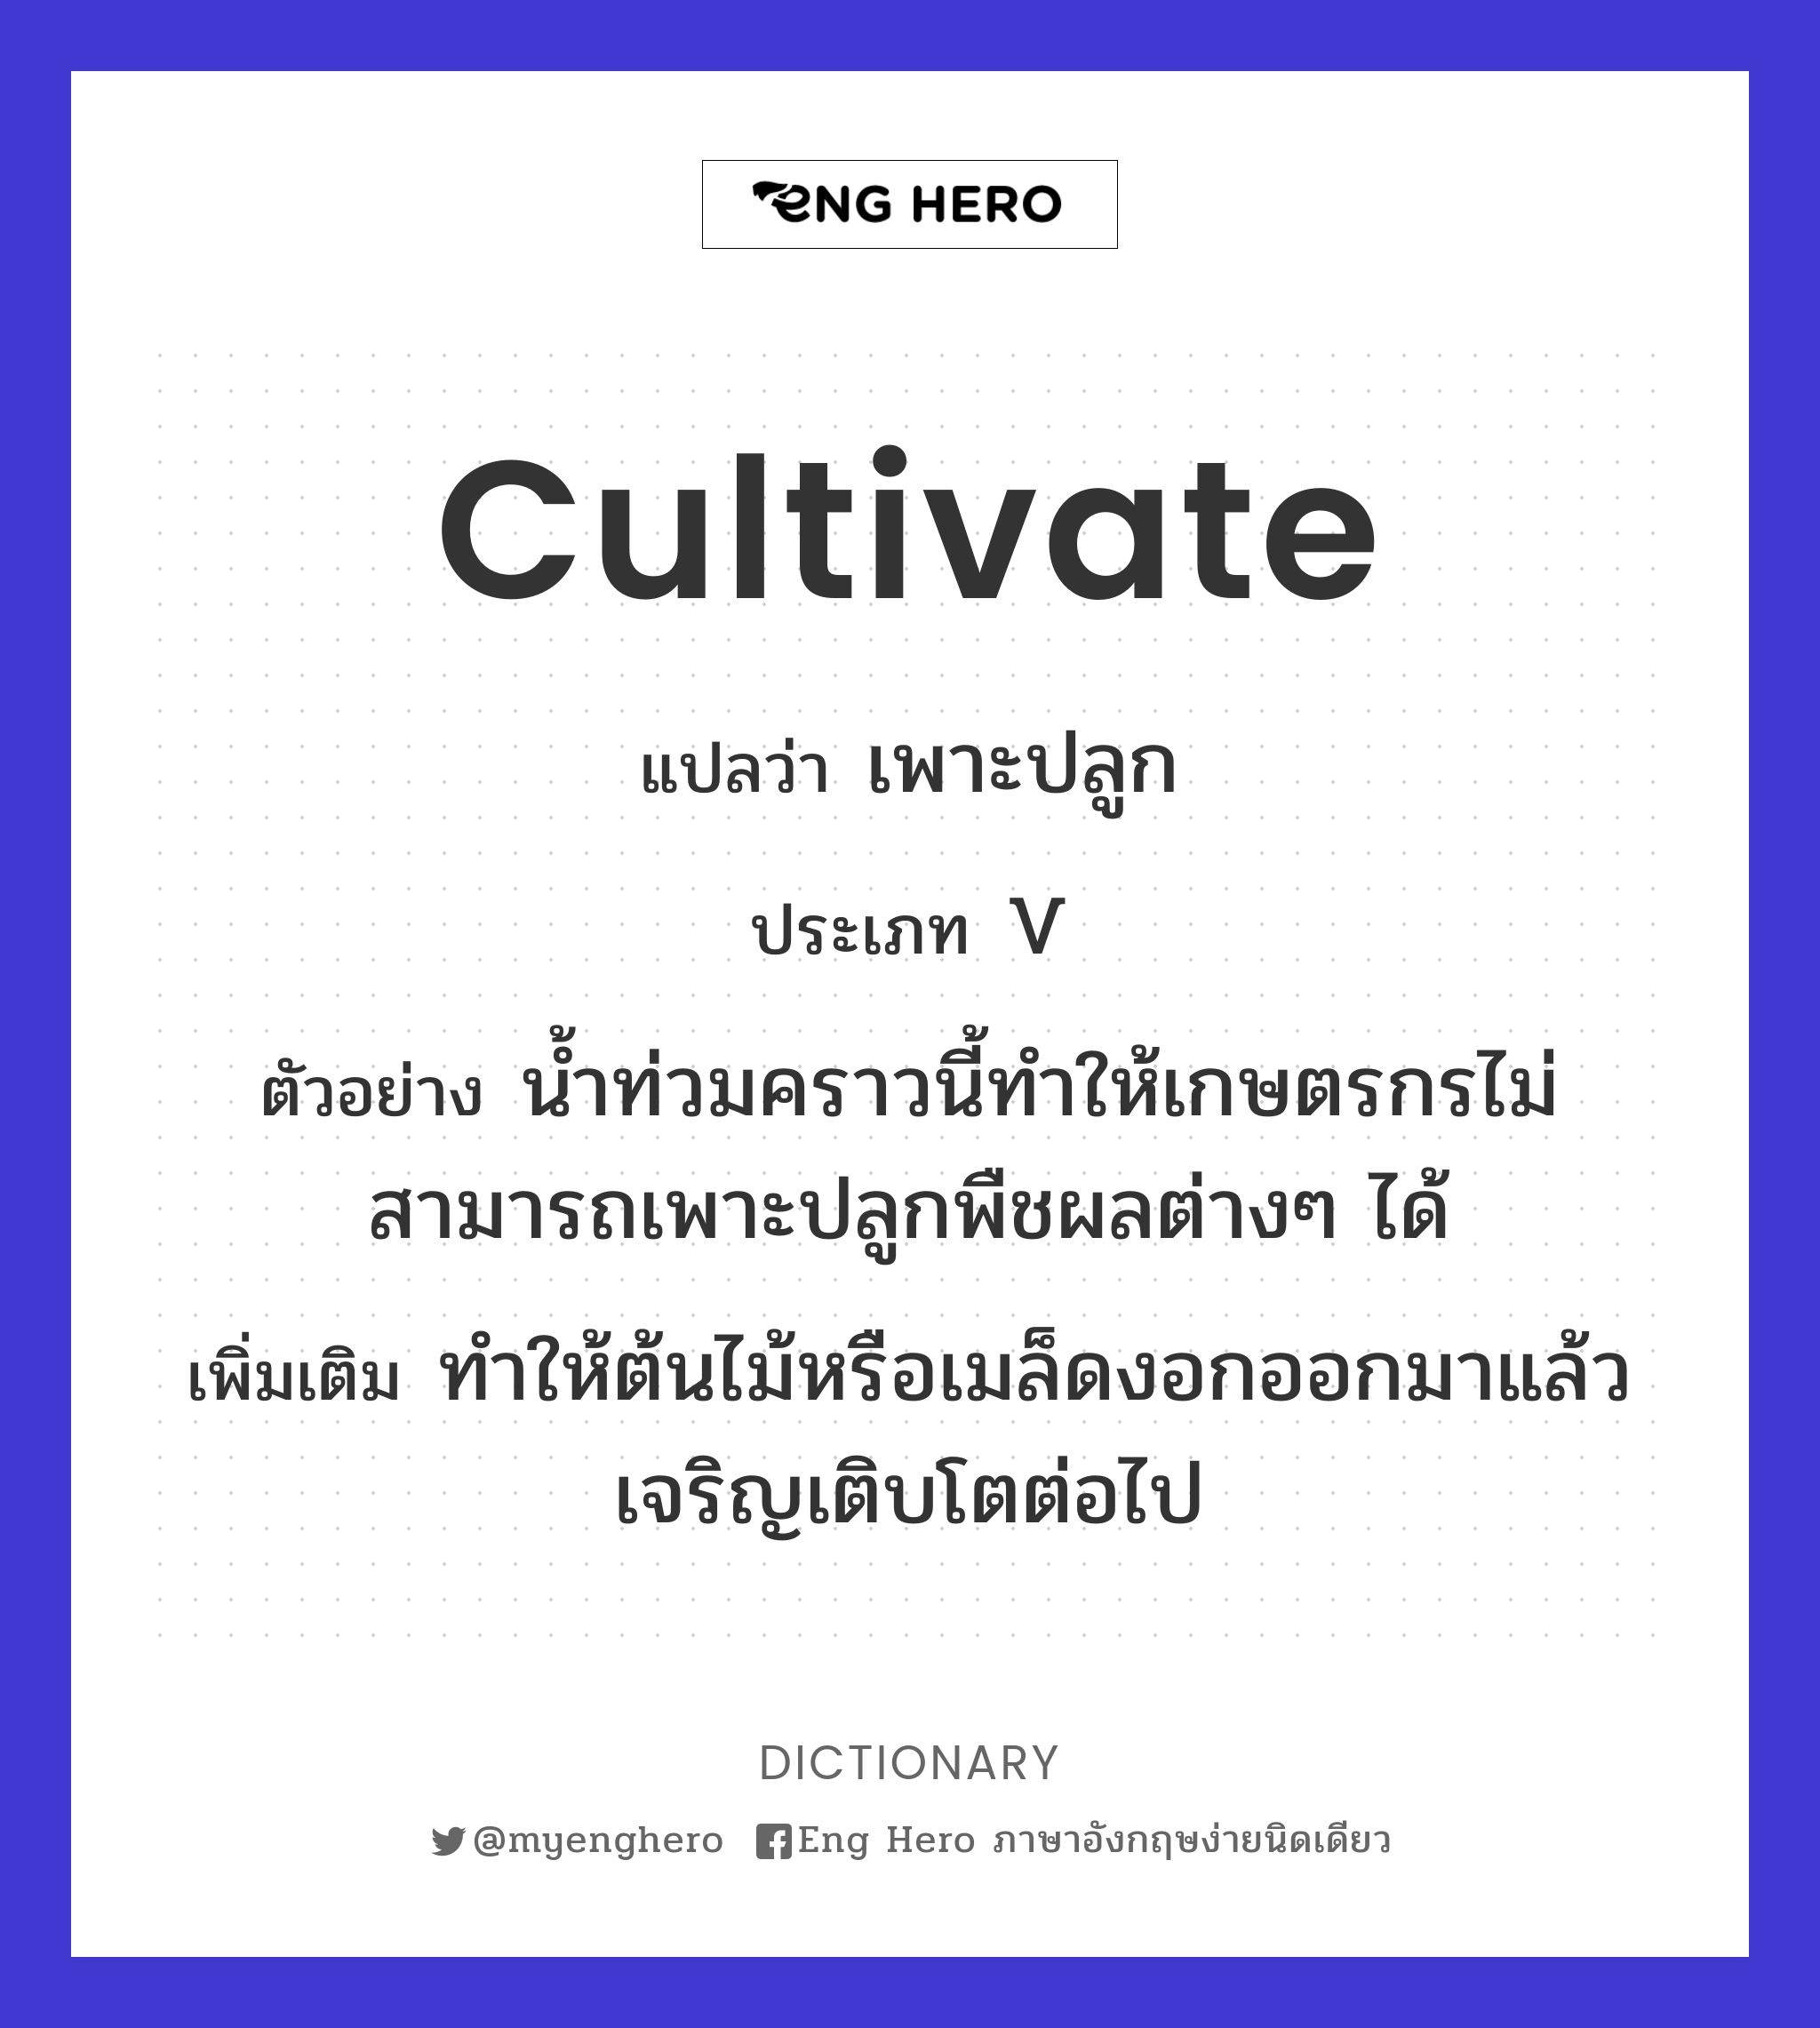 cultivate